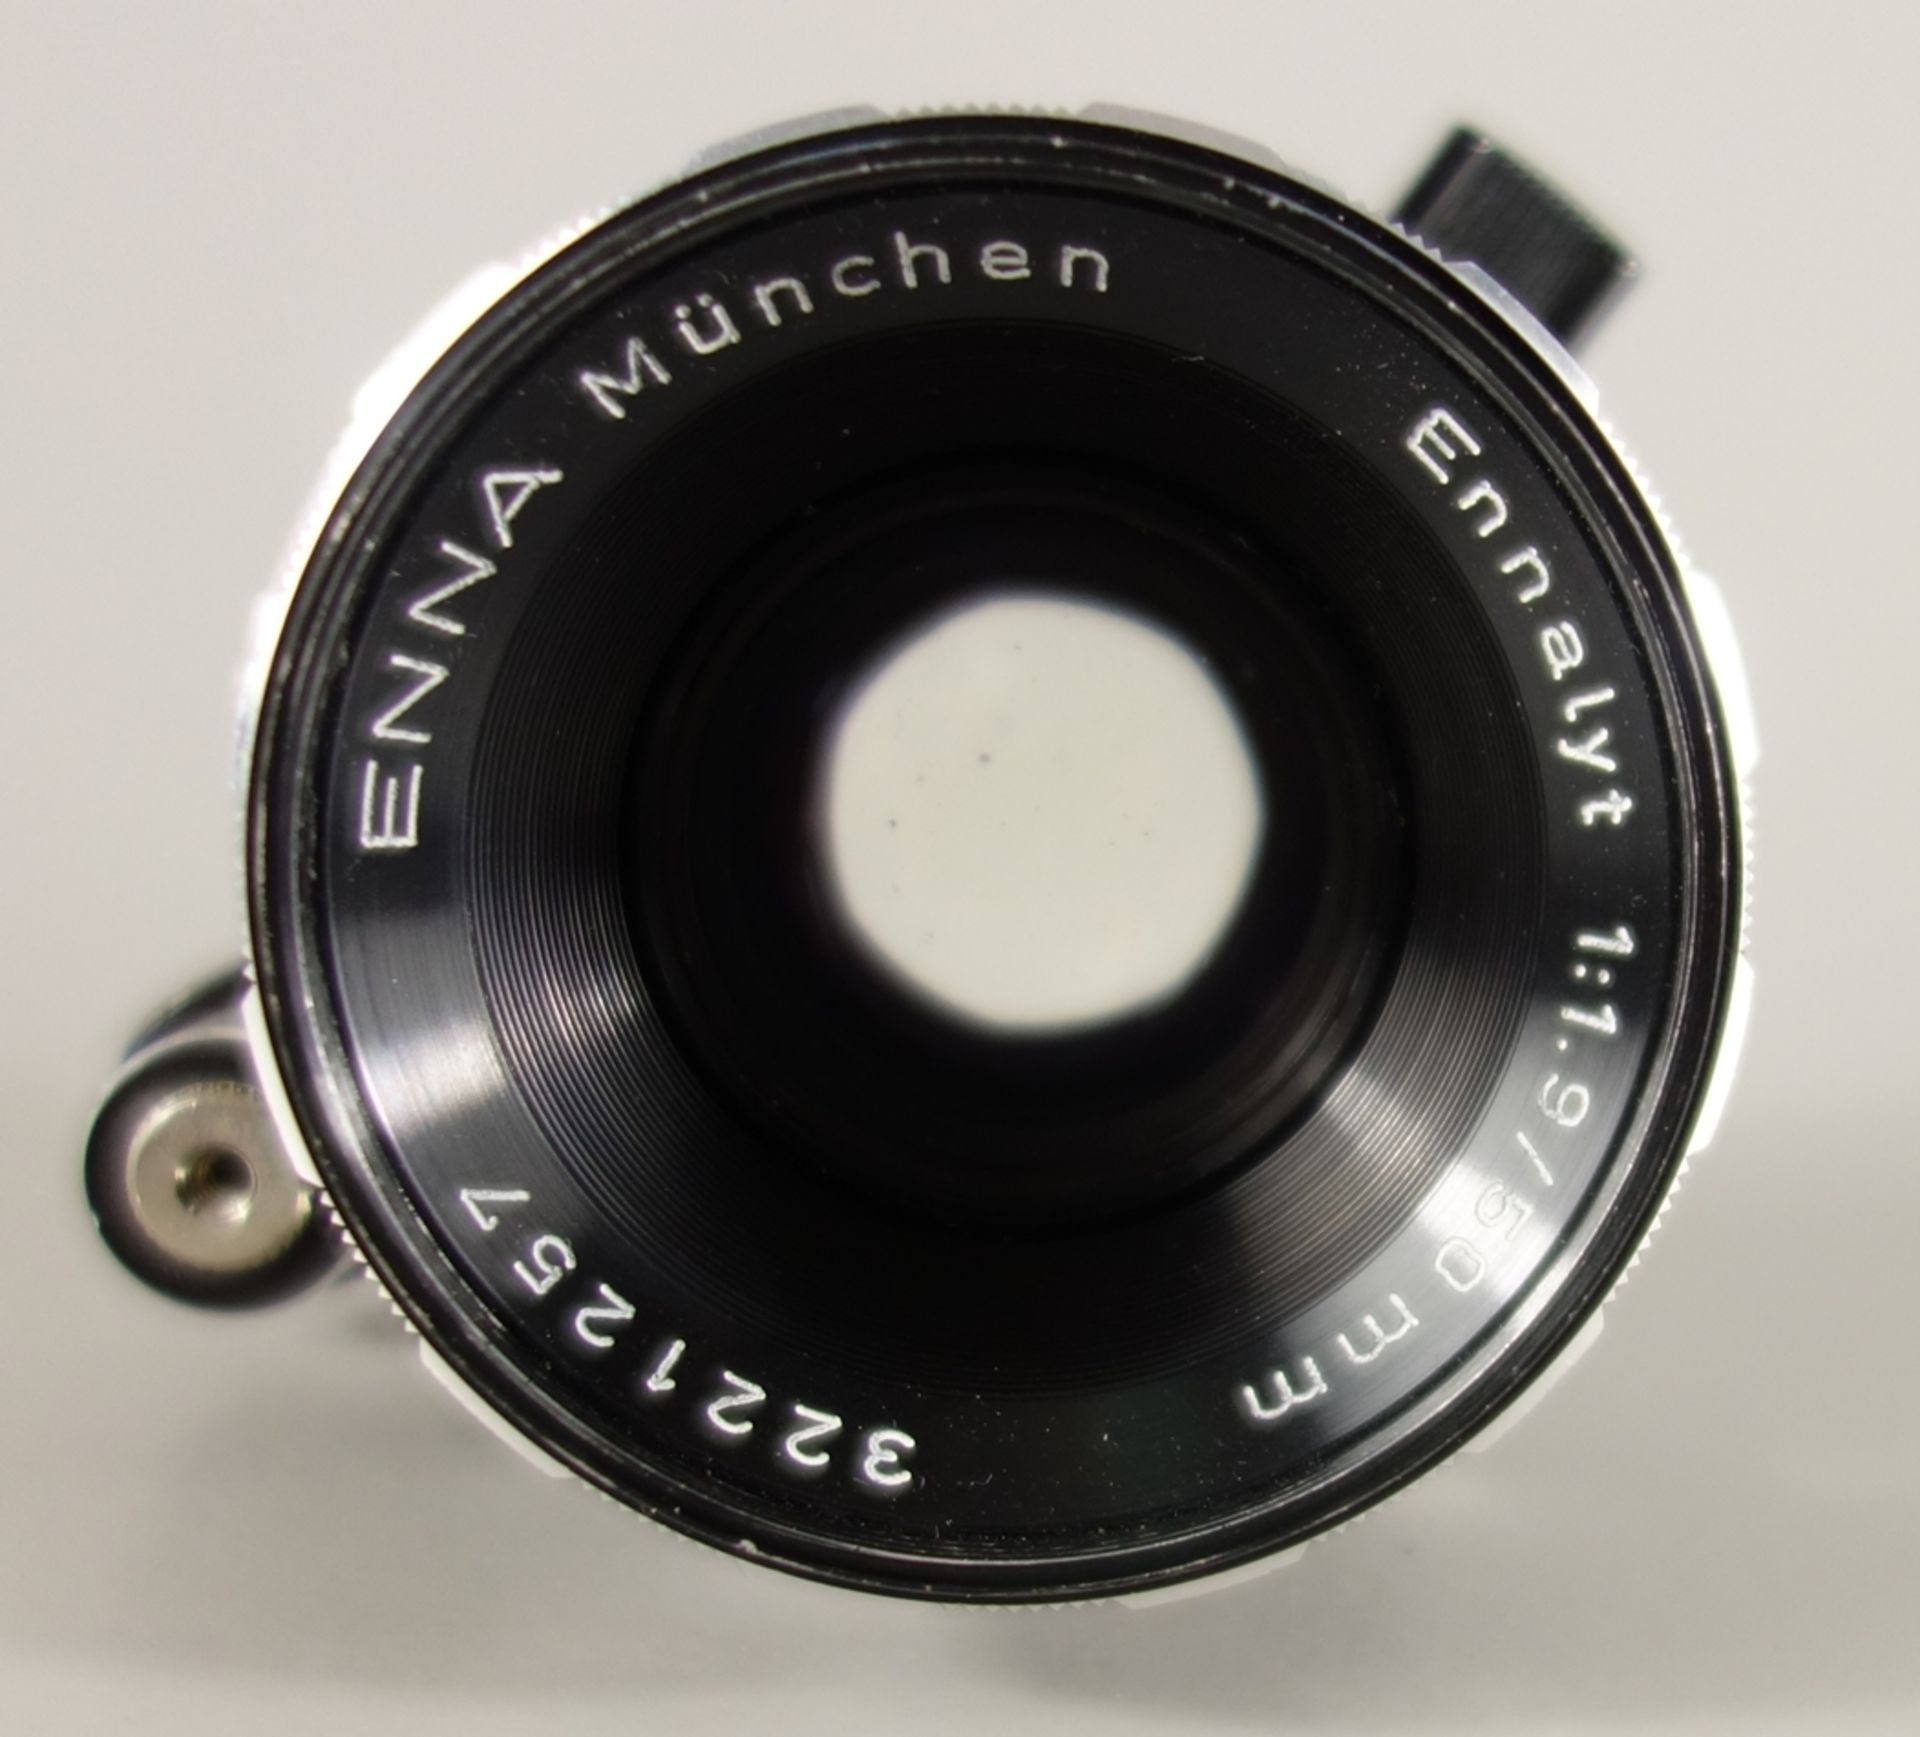 Objektiv Enna München Ennalyt 1:1,9/50 mm, Serien-Nr. 3221257, mit Verunreinigungen, aus